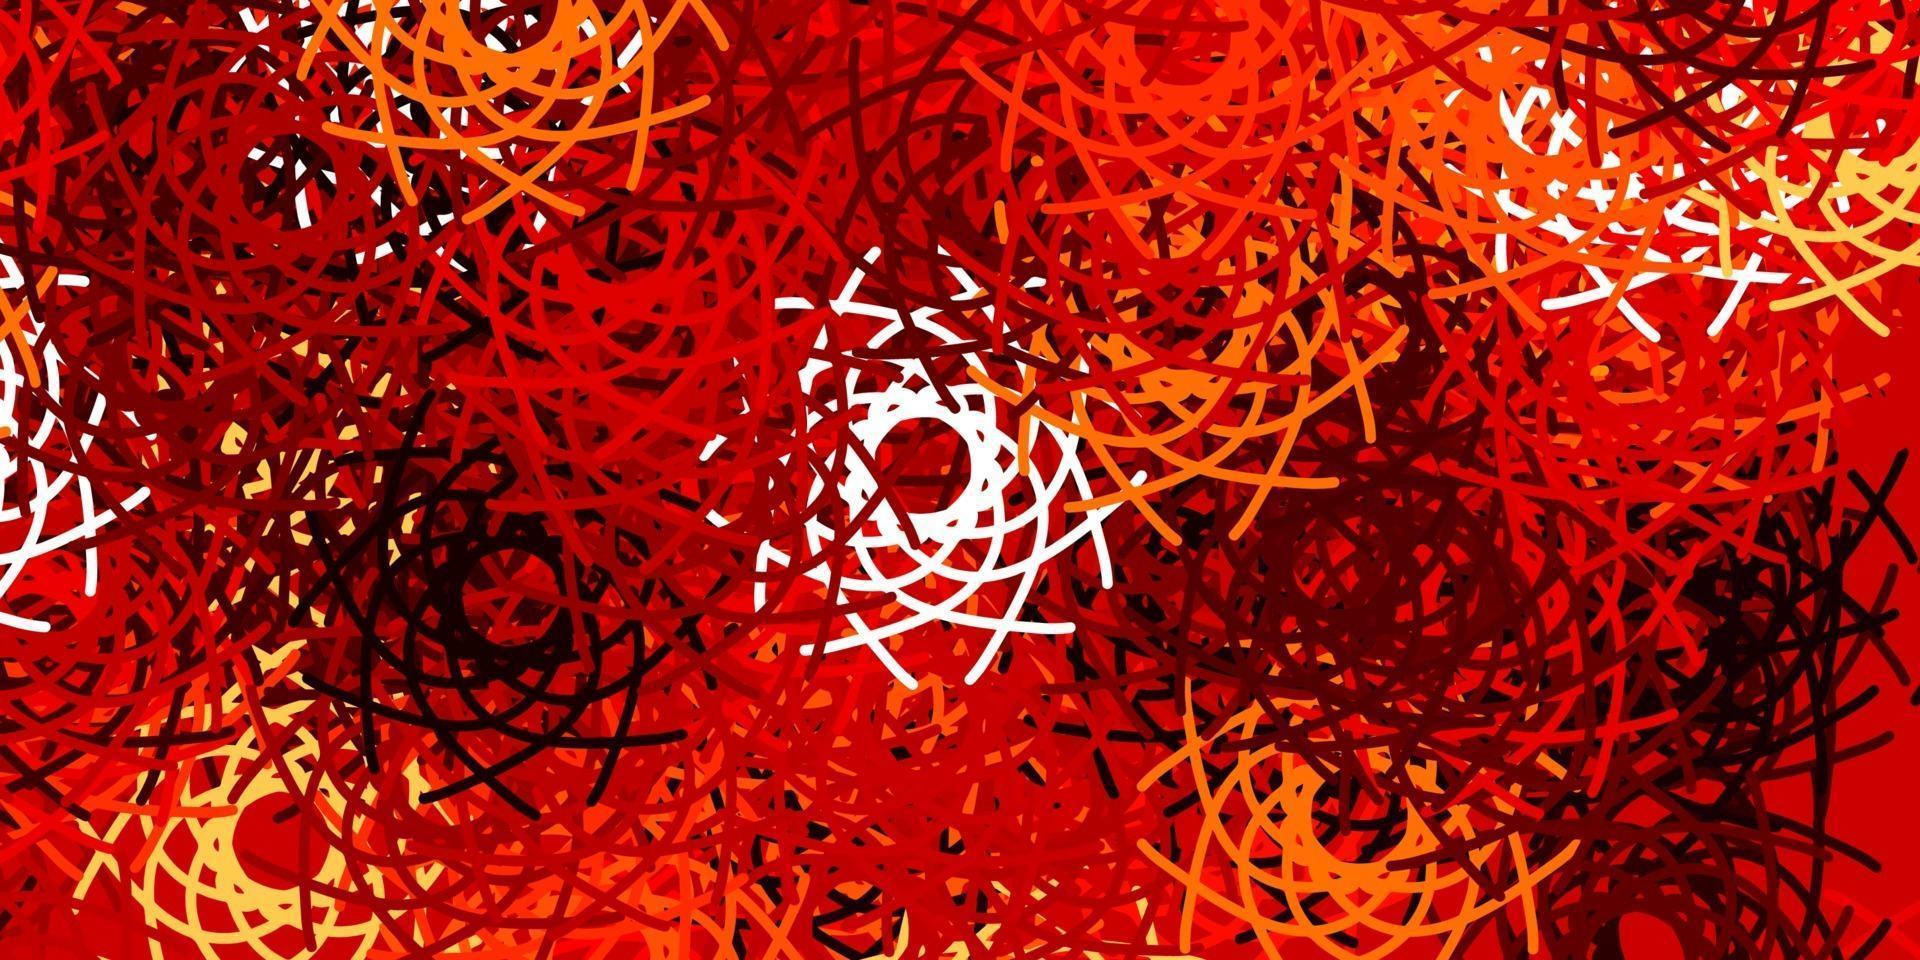 patrón de vector rojo, amarillo claro con formas abstractas.